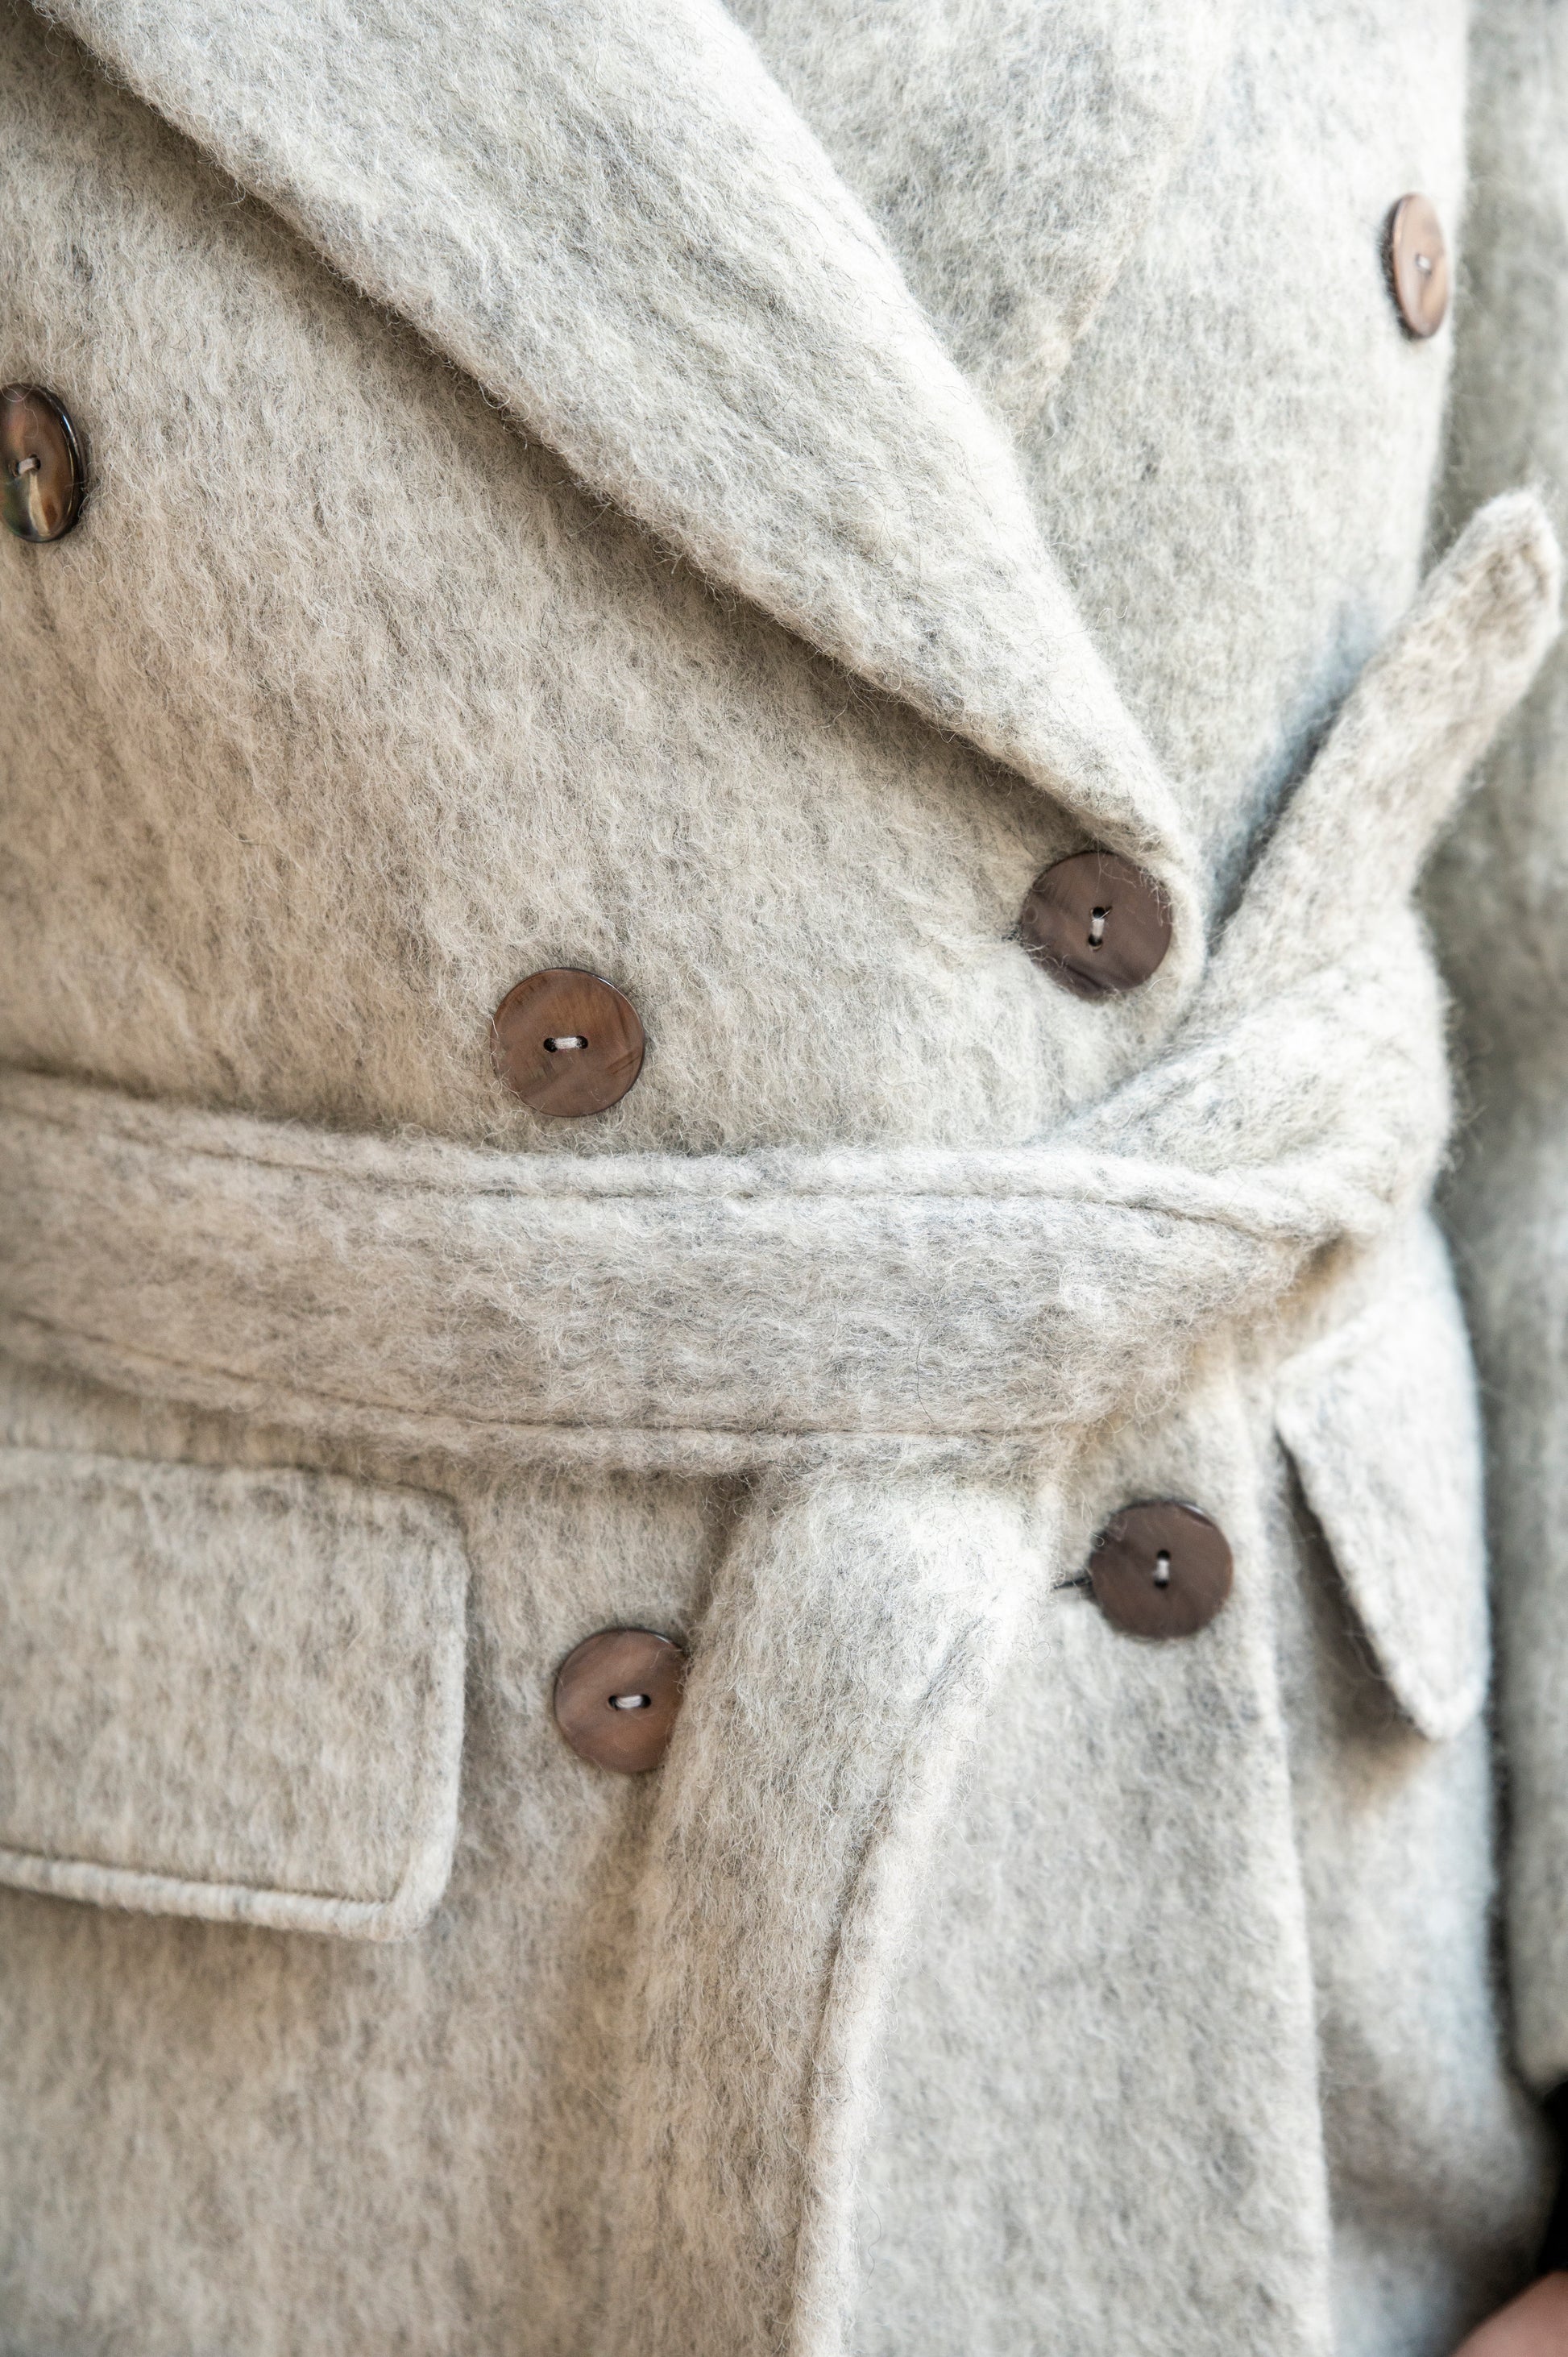 Grey Wool Overcoat - Smart Winter Coat – Te'Orna